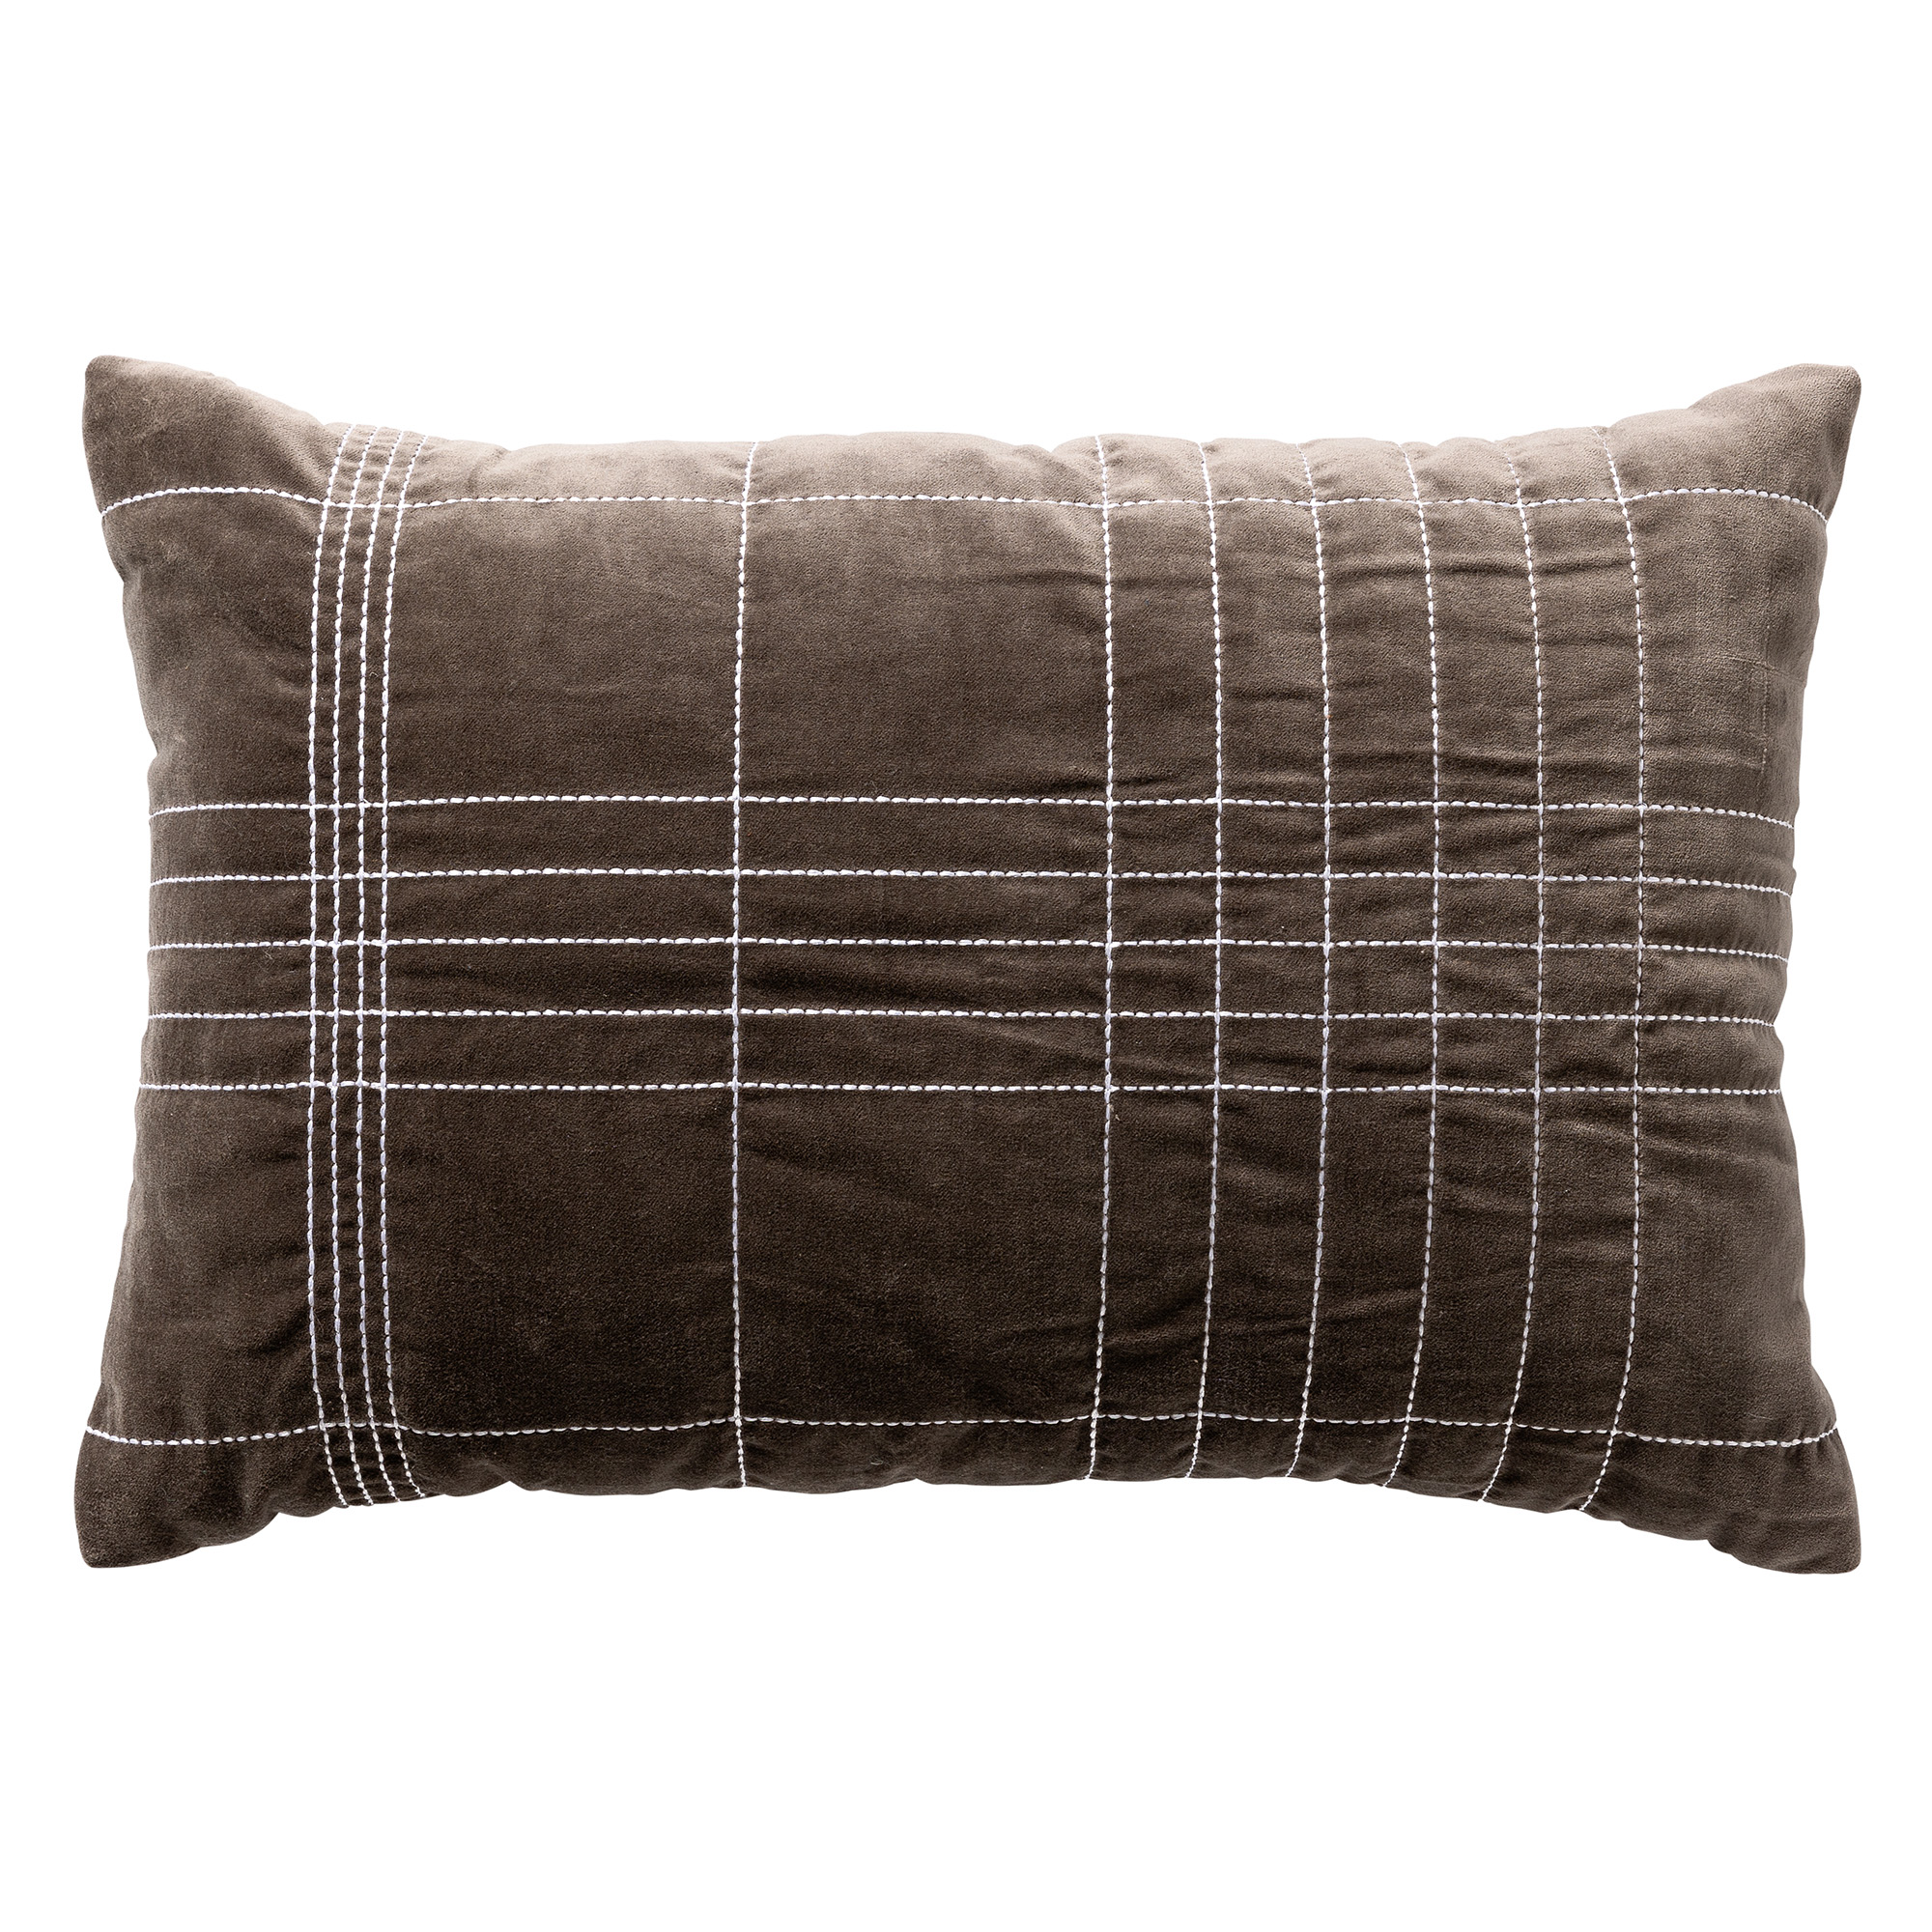 SELAH - Sierkussen 40x60 cm - velvet – subtiel ruitpatroon - Charcoal Gray - antraciet